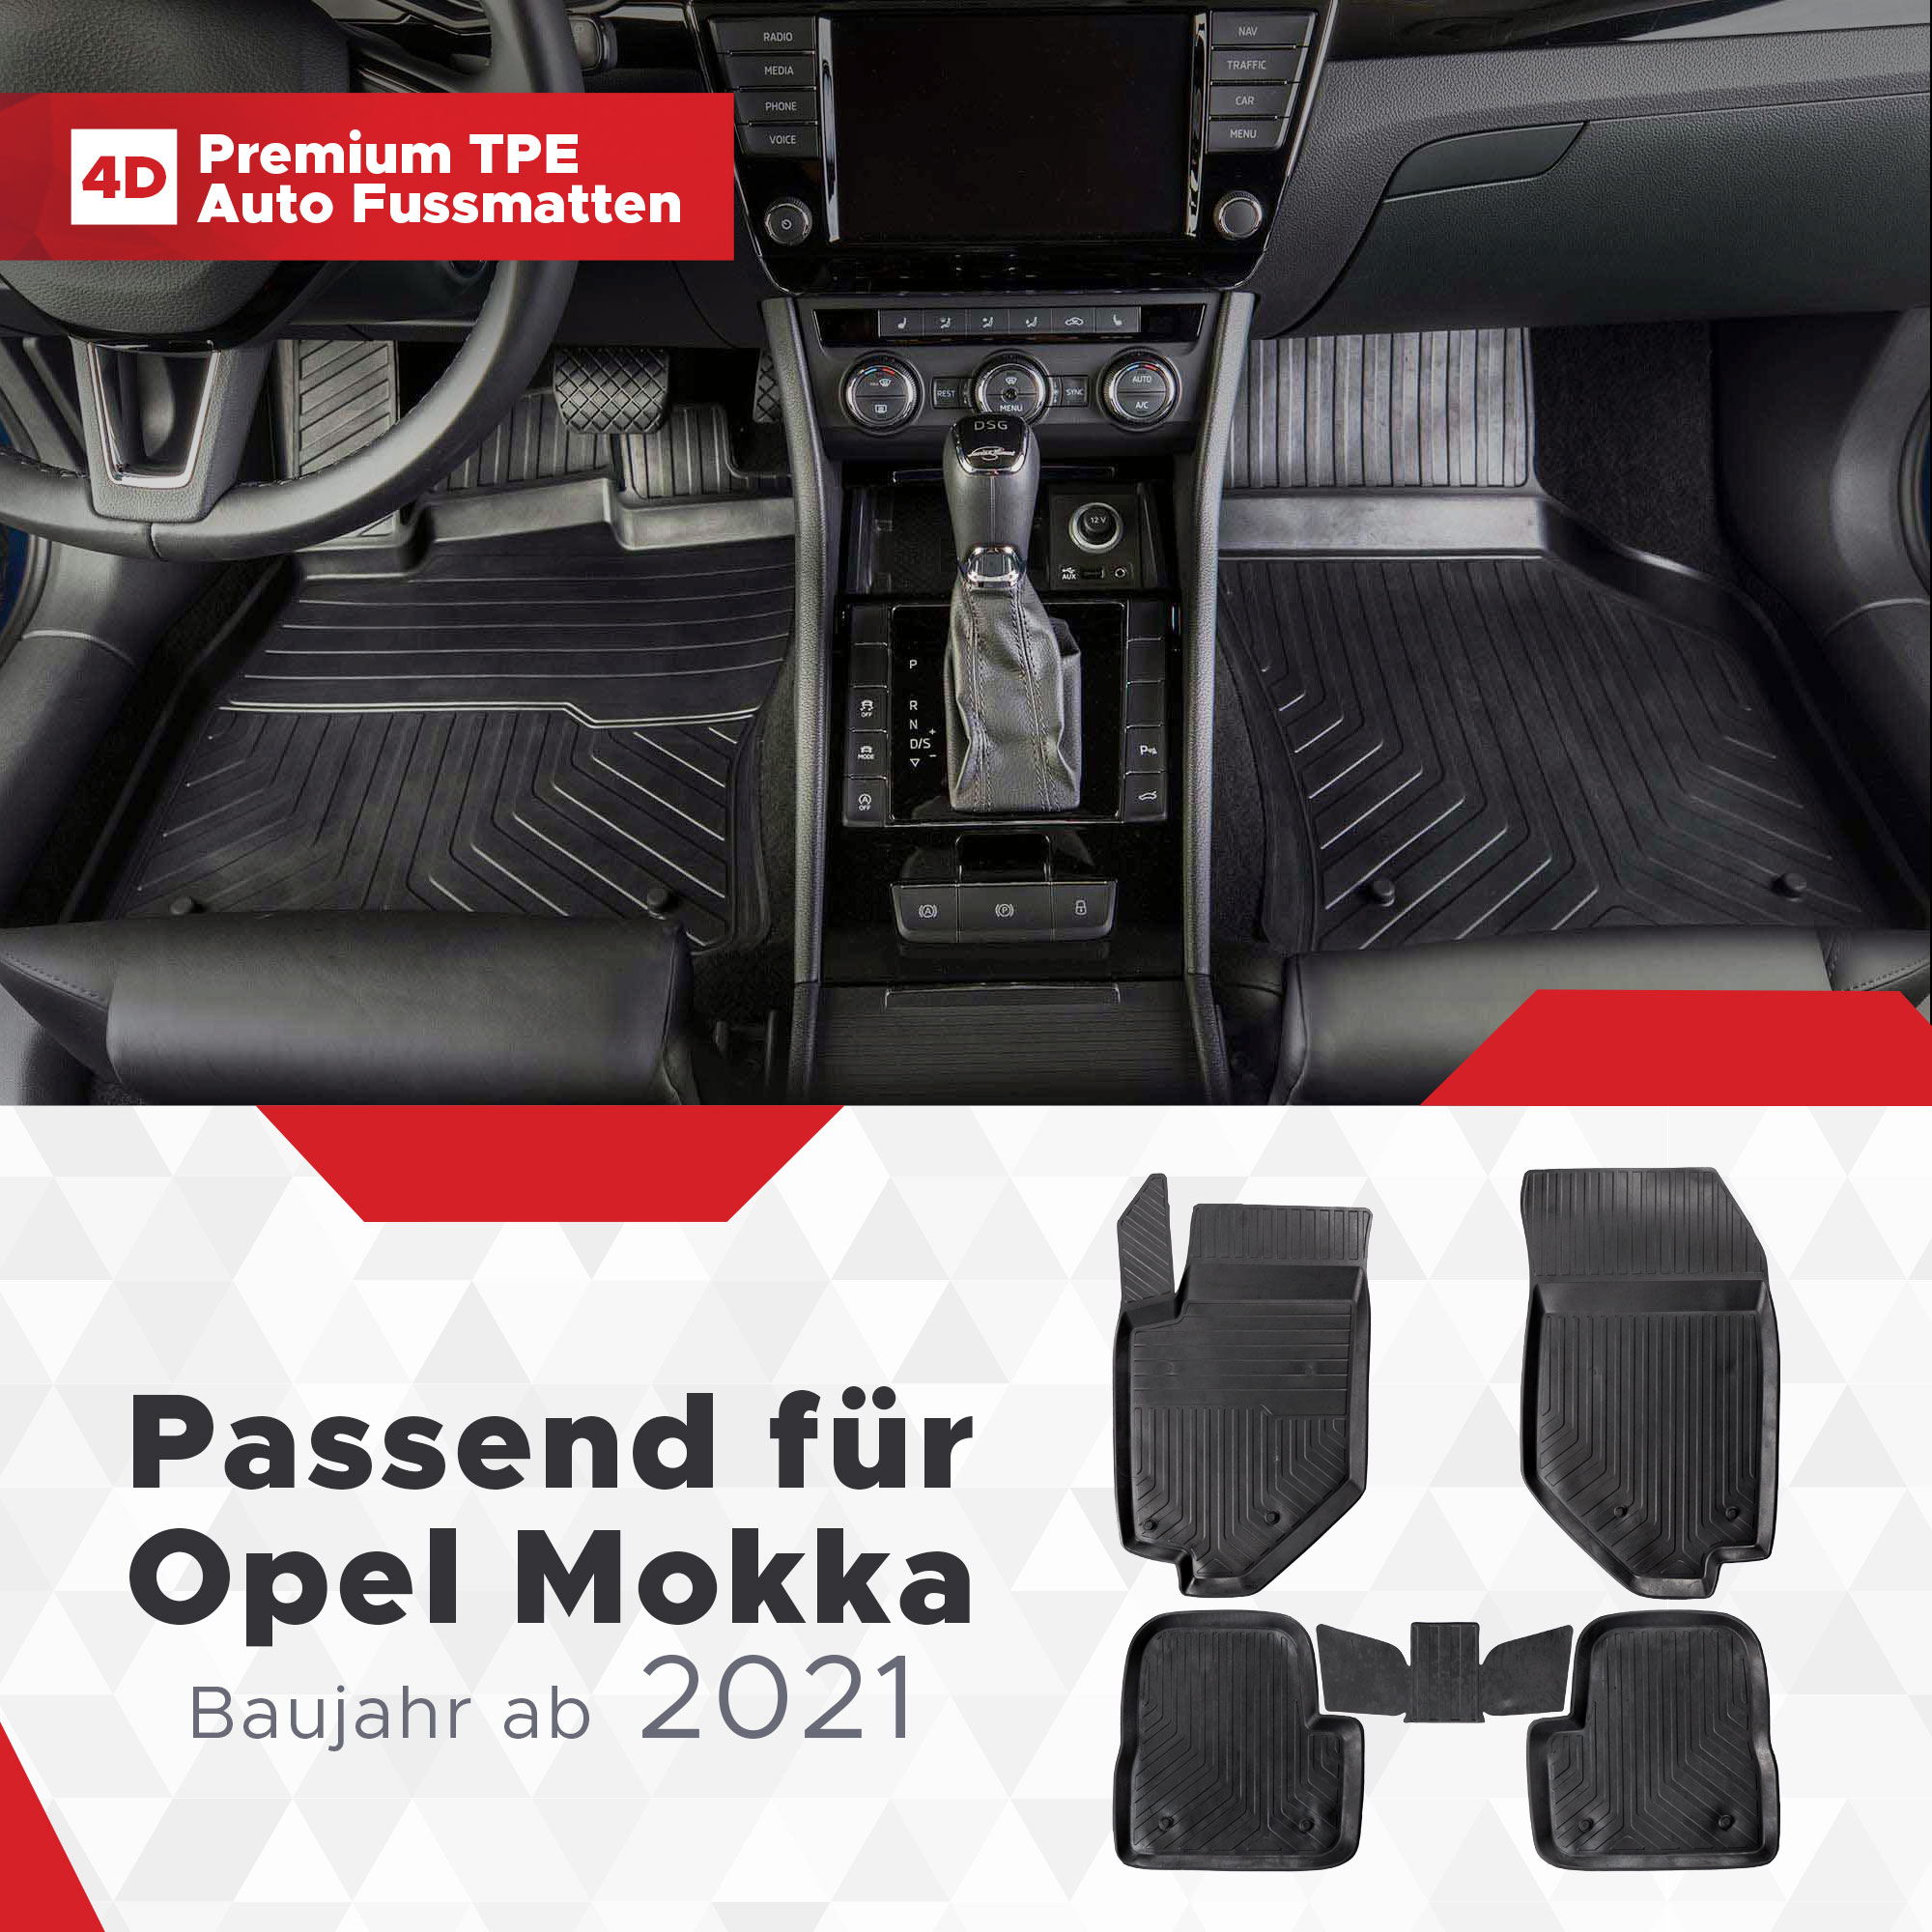 4D Opel Mokka Fussmatten Bj ab 2021- Gummimatten